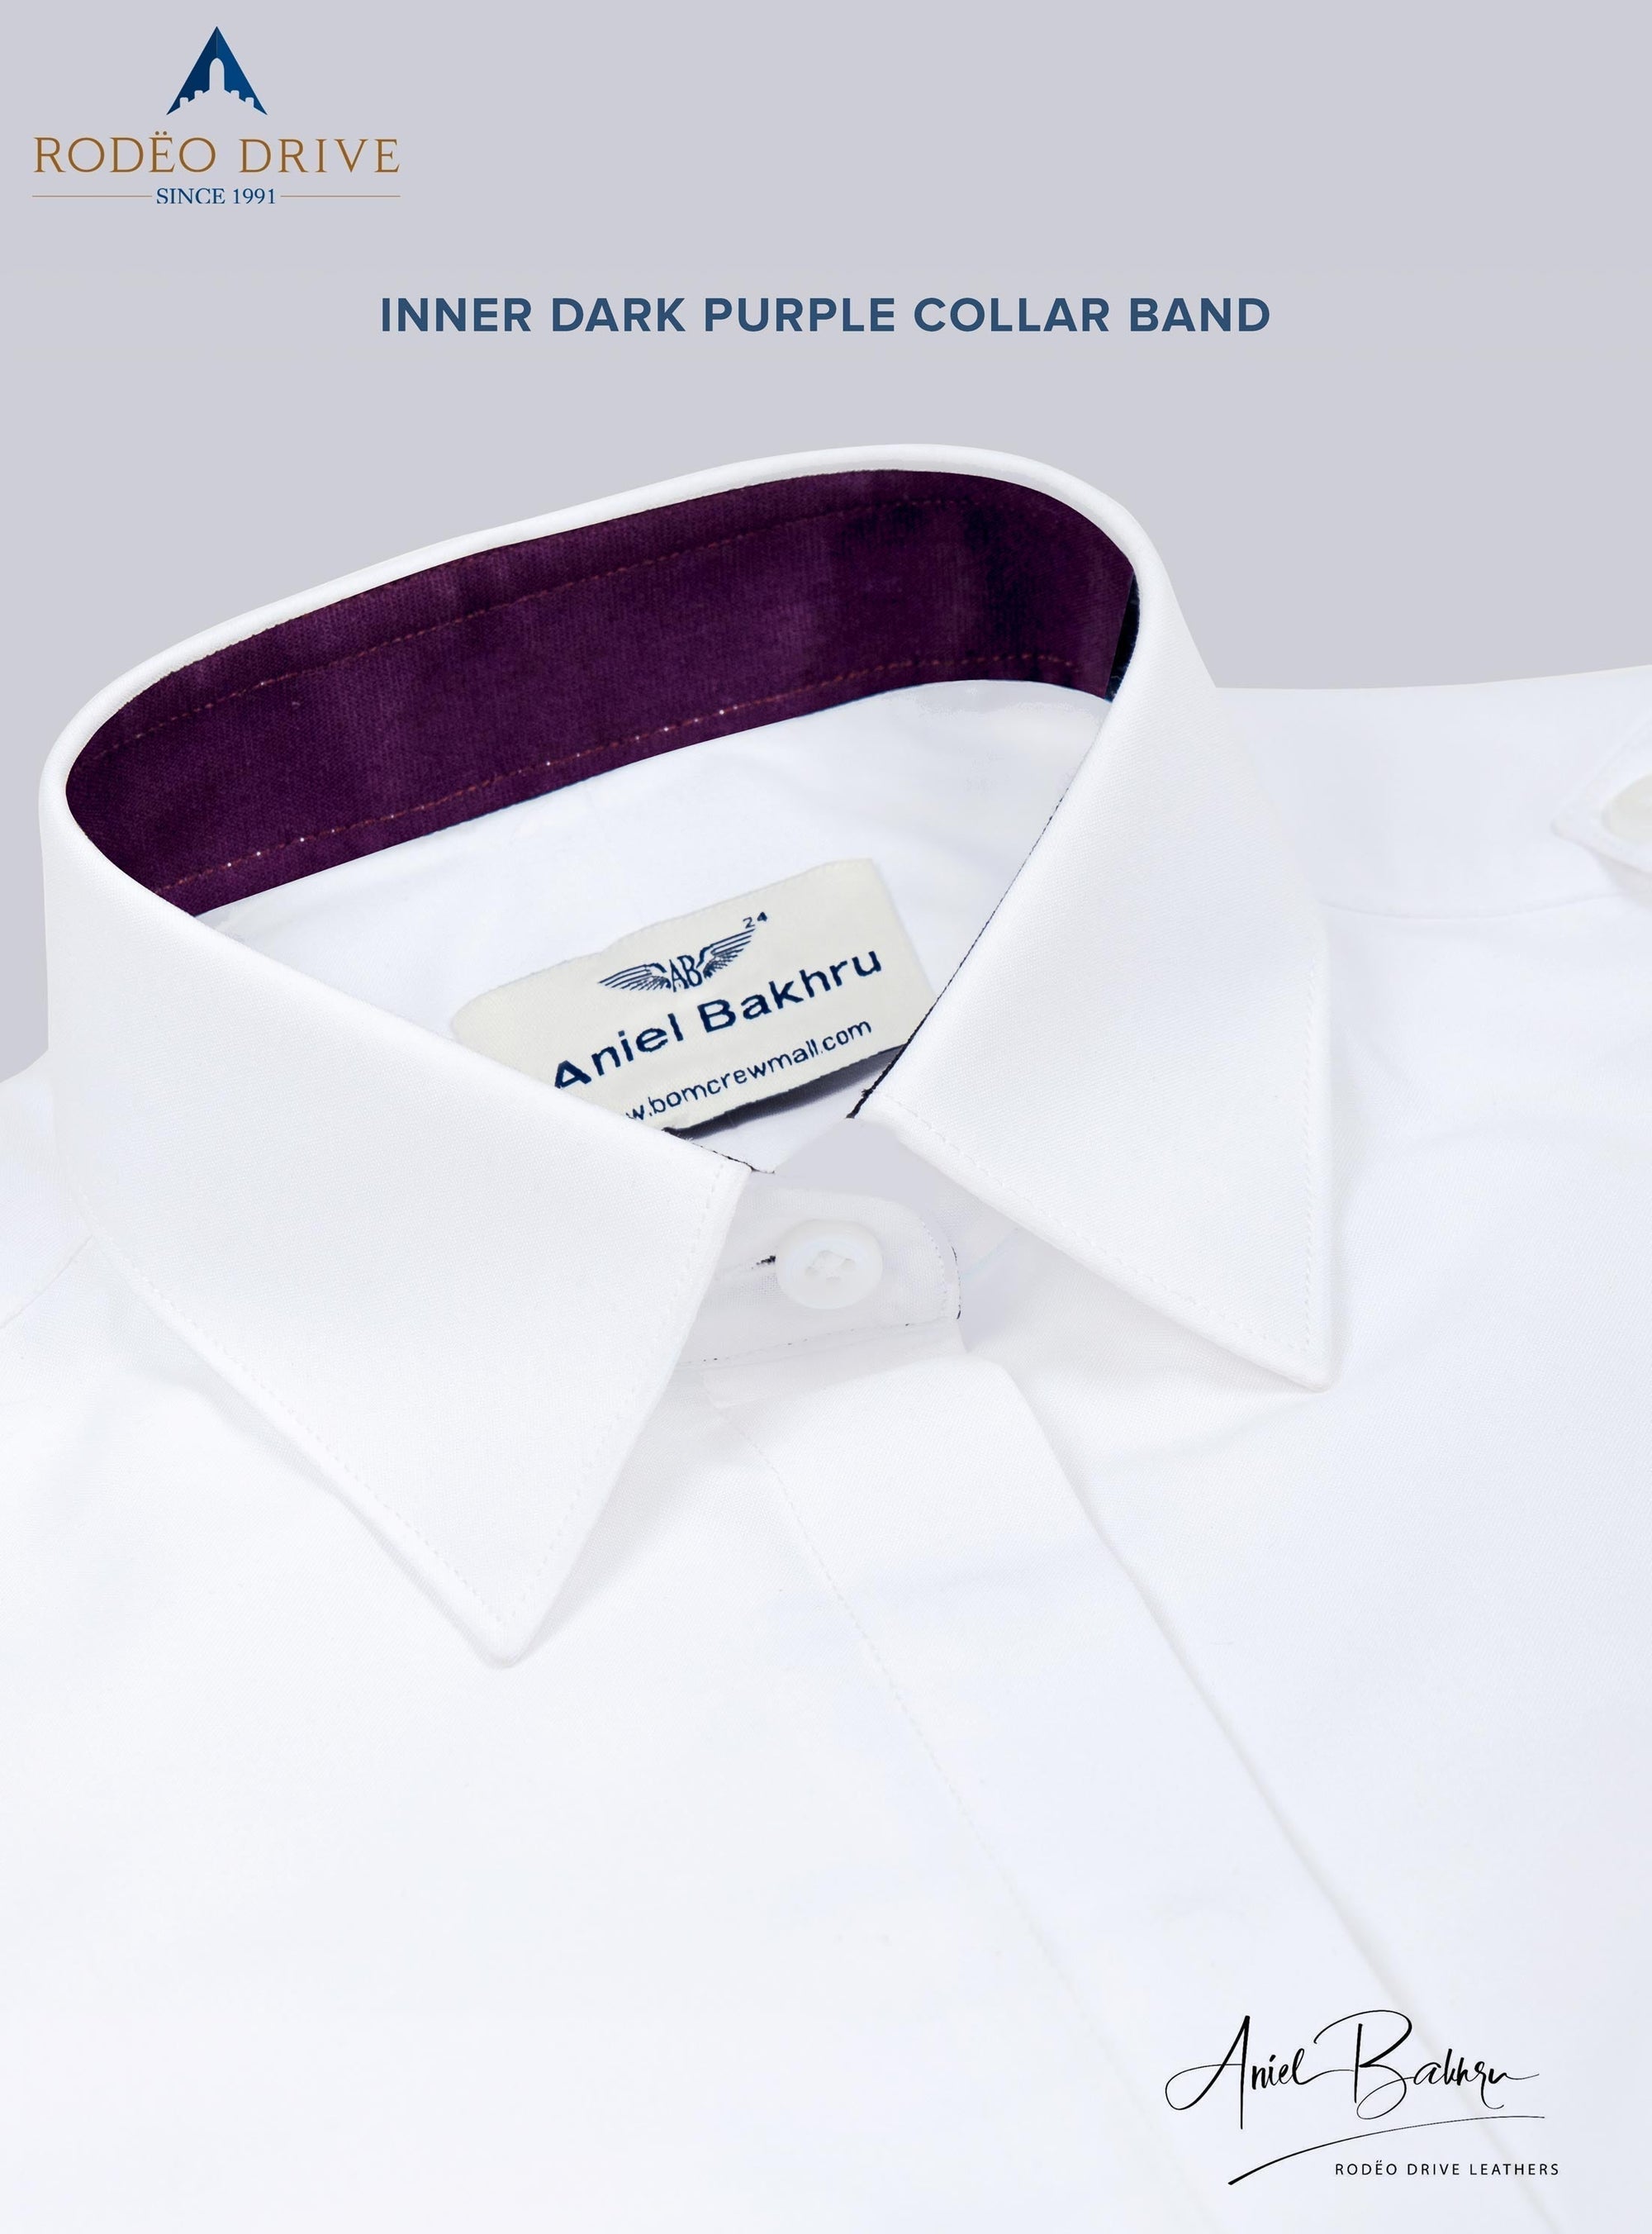 Inner dark purple collar band image of Custom Women's Pilot shirt